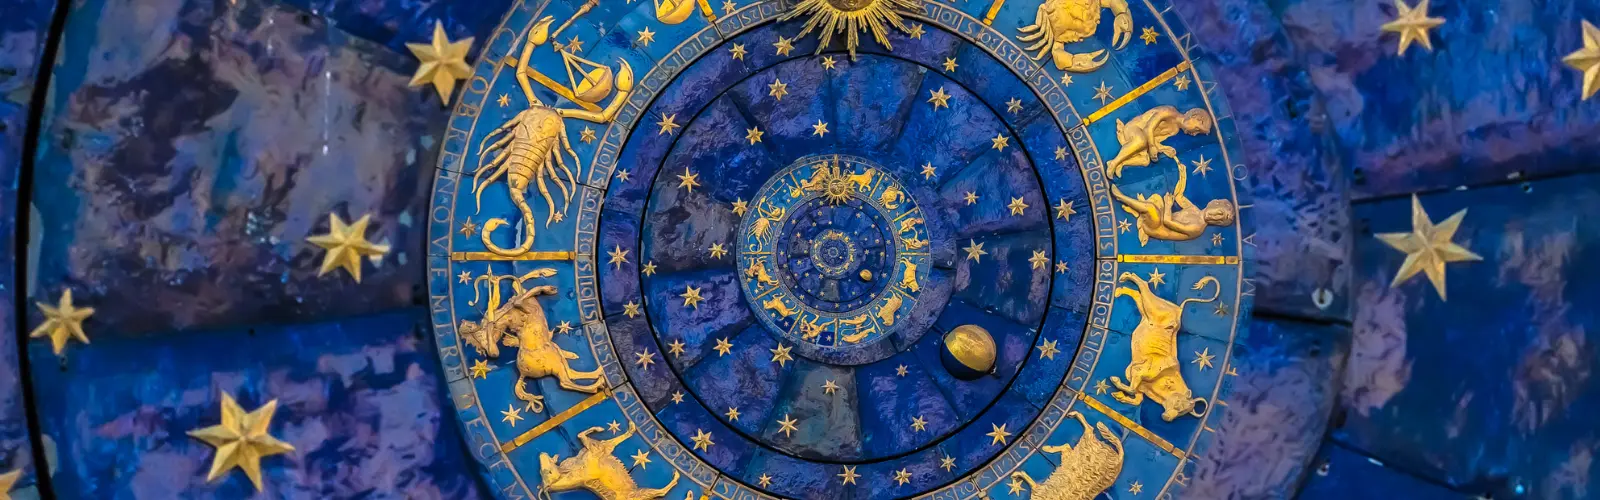 Astrologie dargestellt durch golden Tierkreiszeichen in einem Kreis auf blauem Grund.